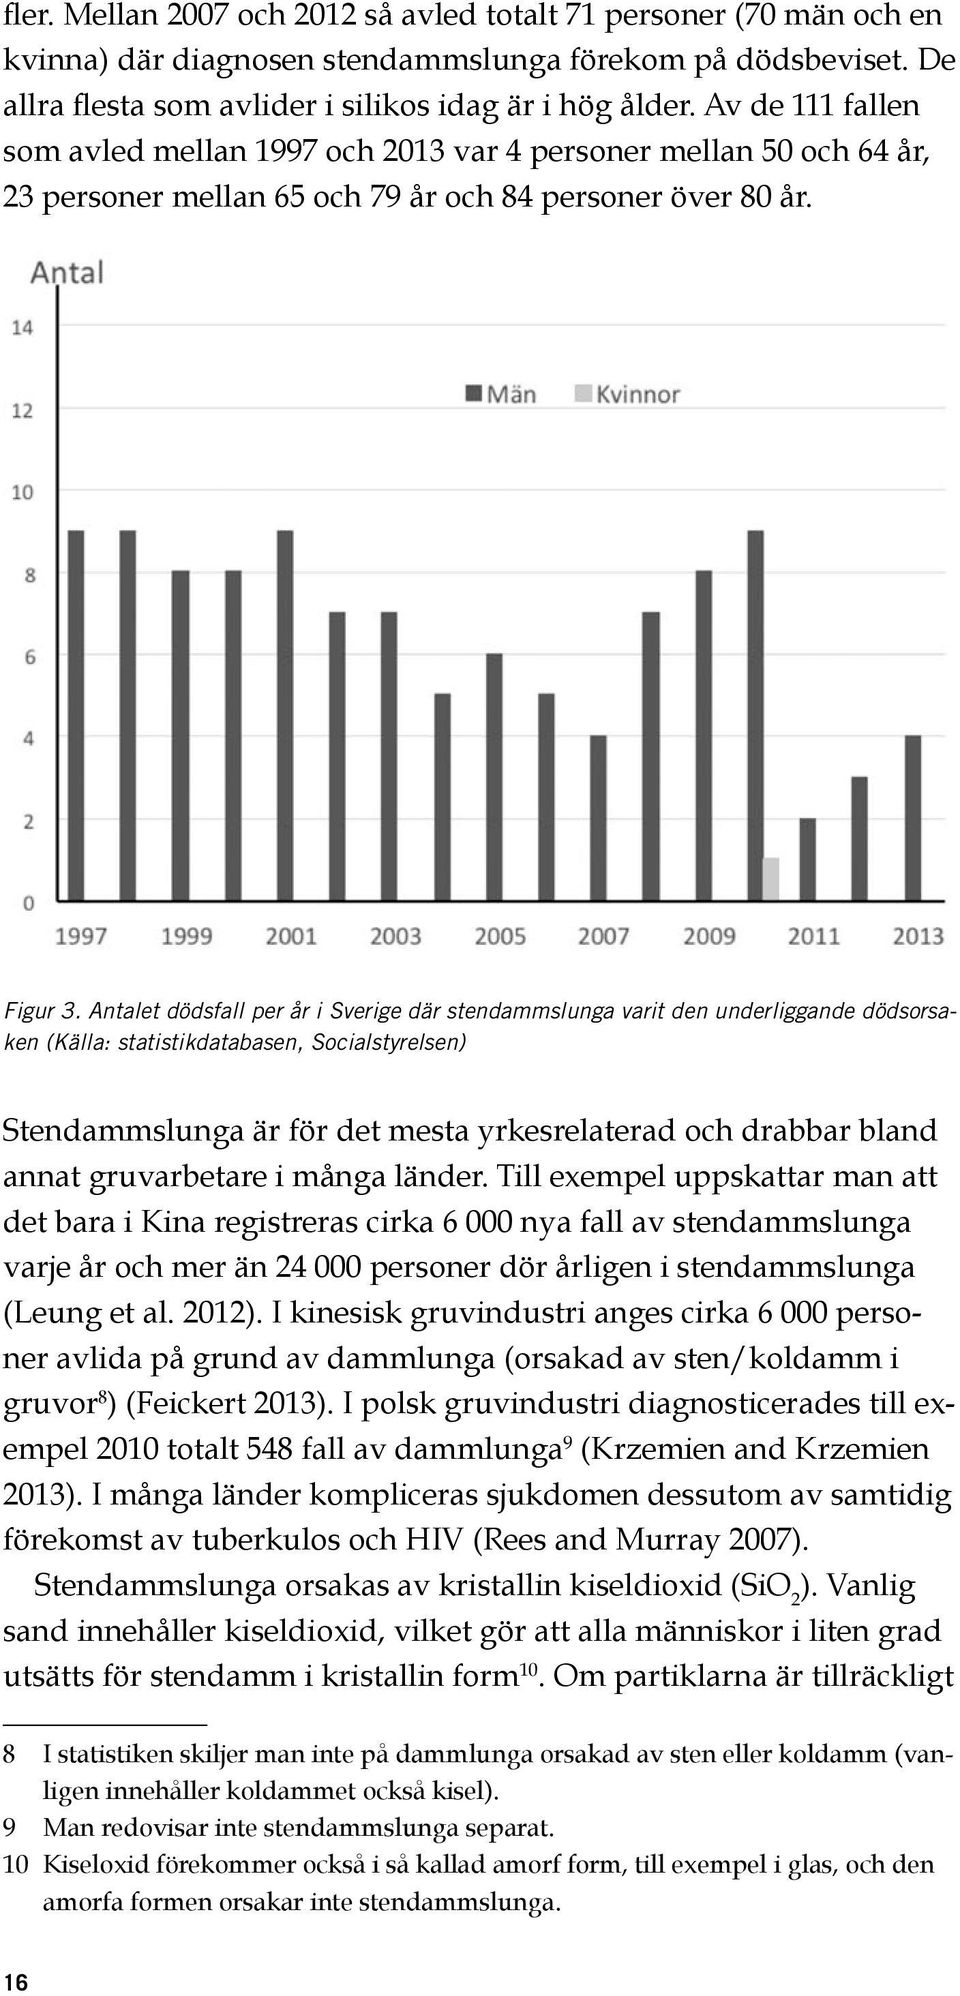 Antalet dödsfall per år i Sverige där stendammslunga varit den underliggande dödsorsaken (Källa: statistikdatabasen, Socialstyrelsen) Stendammslunga är för det mesta yrkesrelaterad och drabbar bland